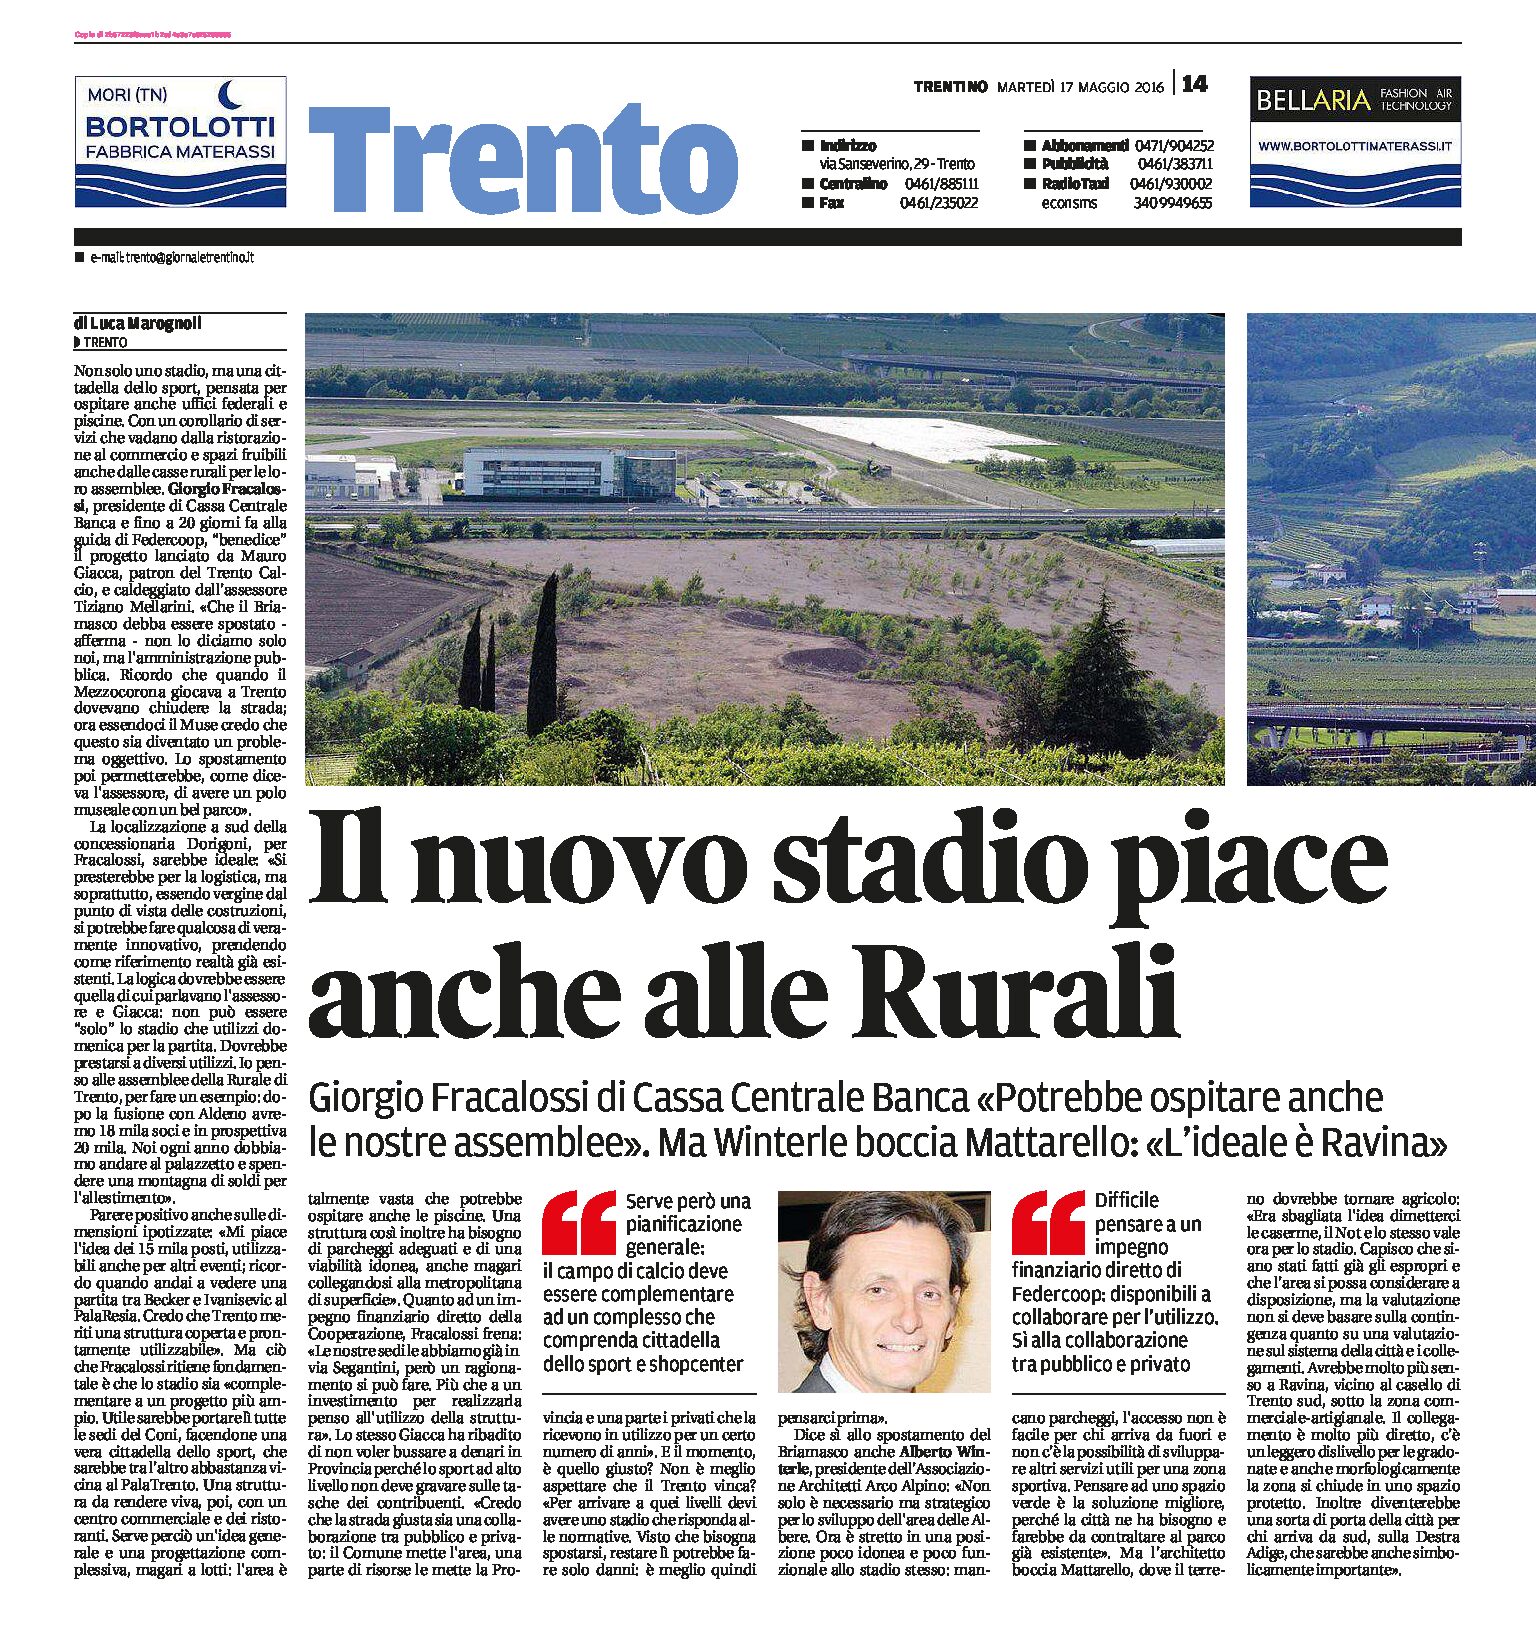 Trento, Mattarello: il nuovo stadio piace anche alle Rurali.